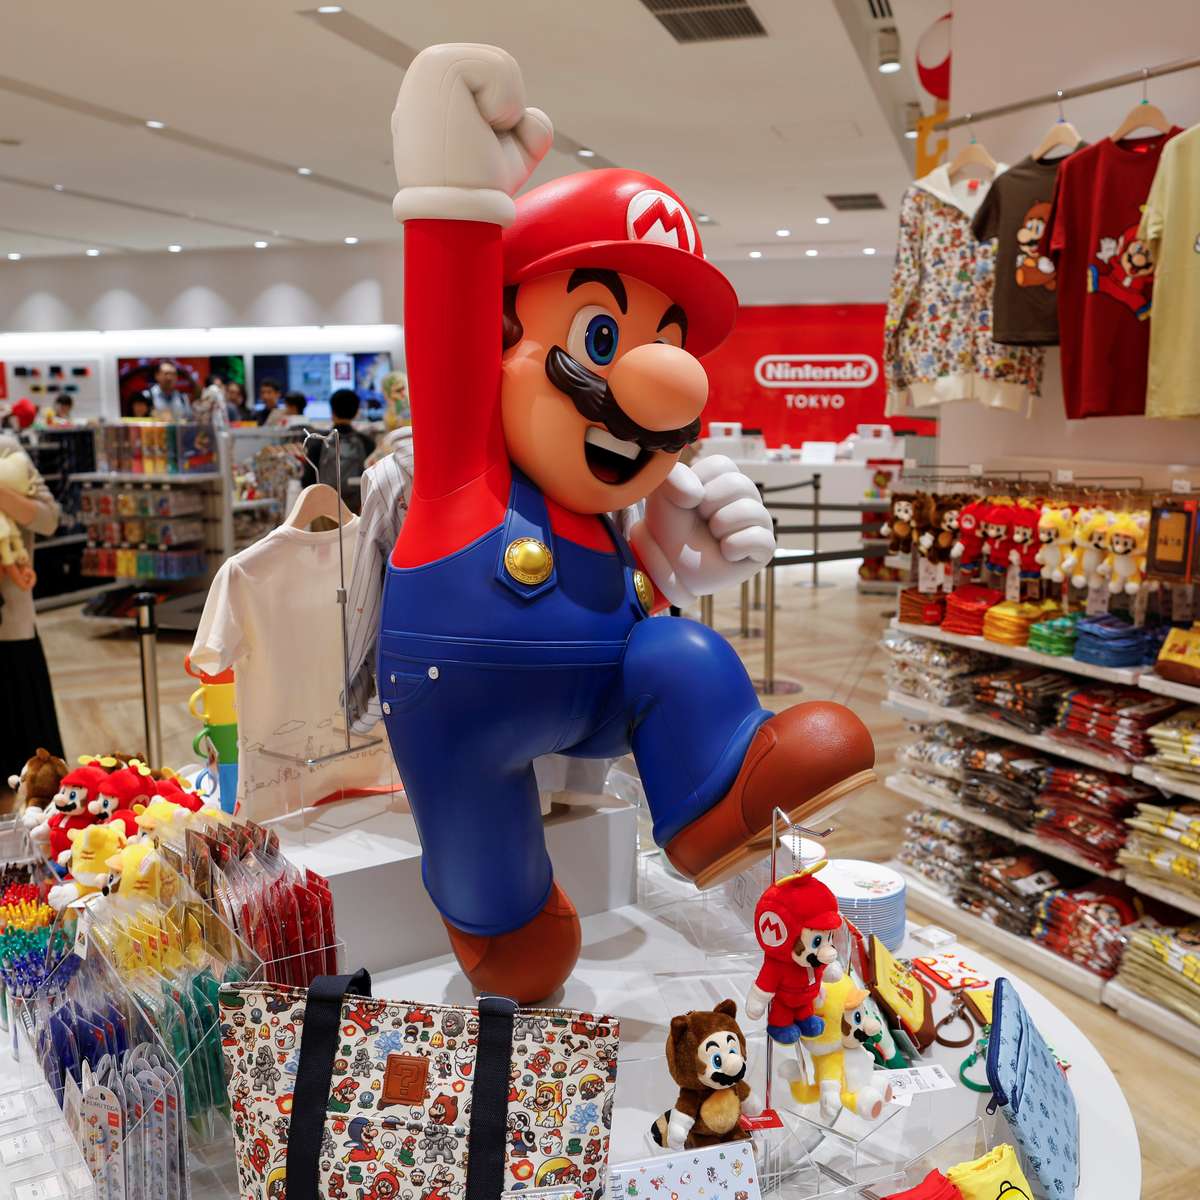 Nintendo anuncia novos jogos no aniversário de 35 anos do Super Mario Bros.